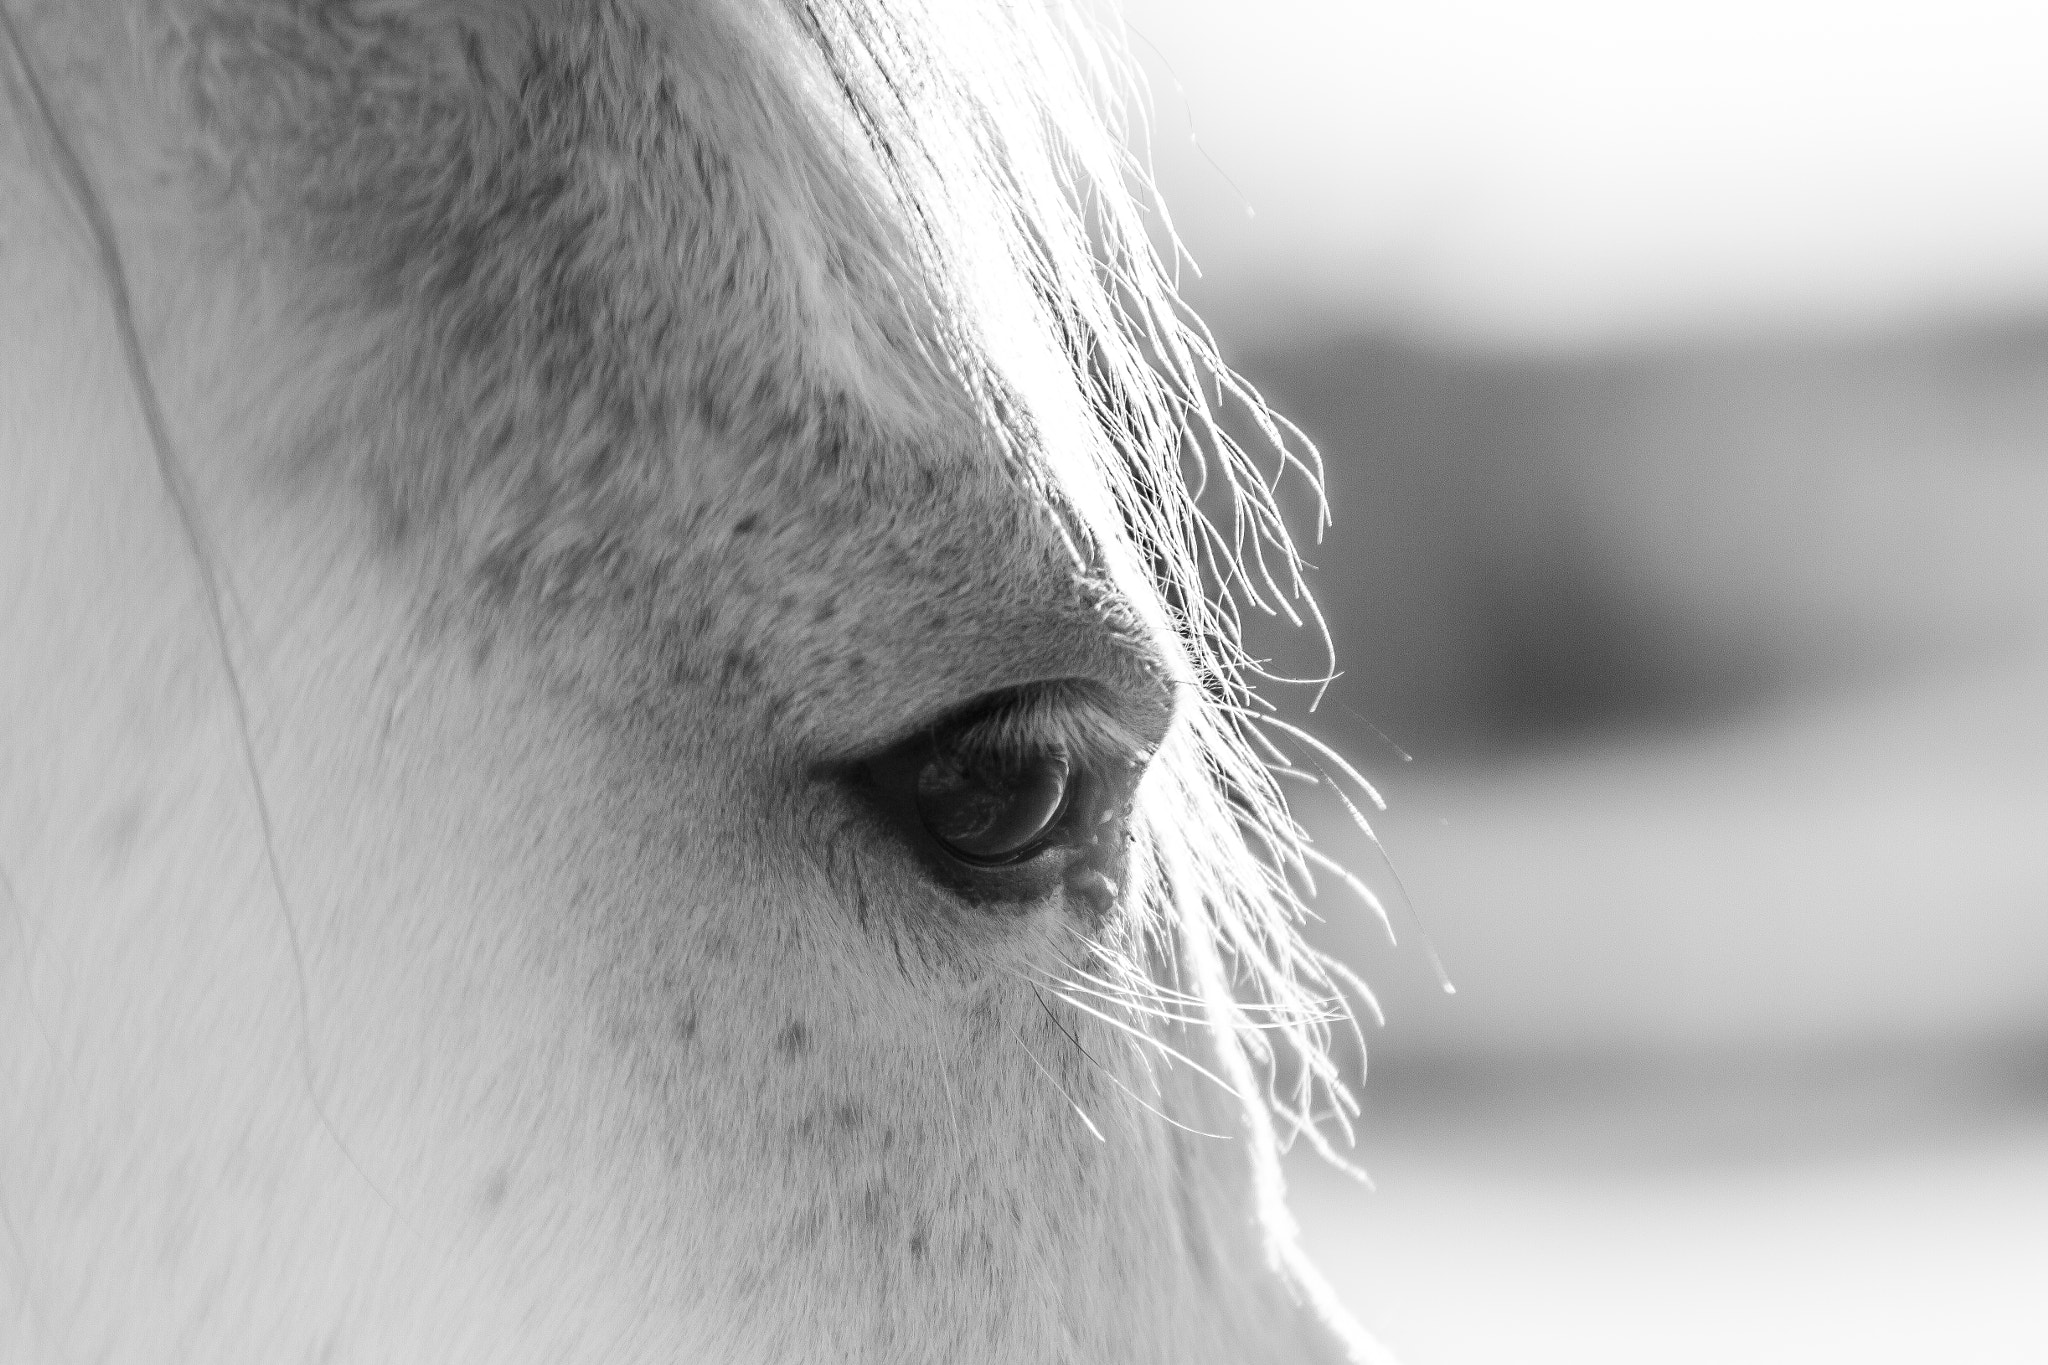 Canon EOS 7D sample photo. Eye of a horse photography